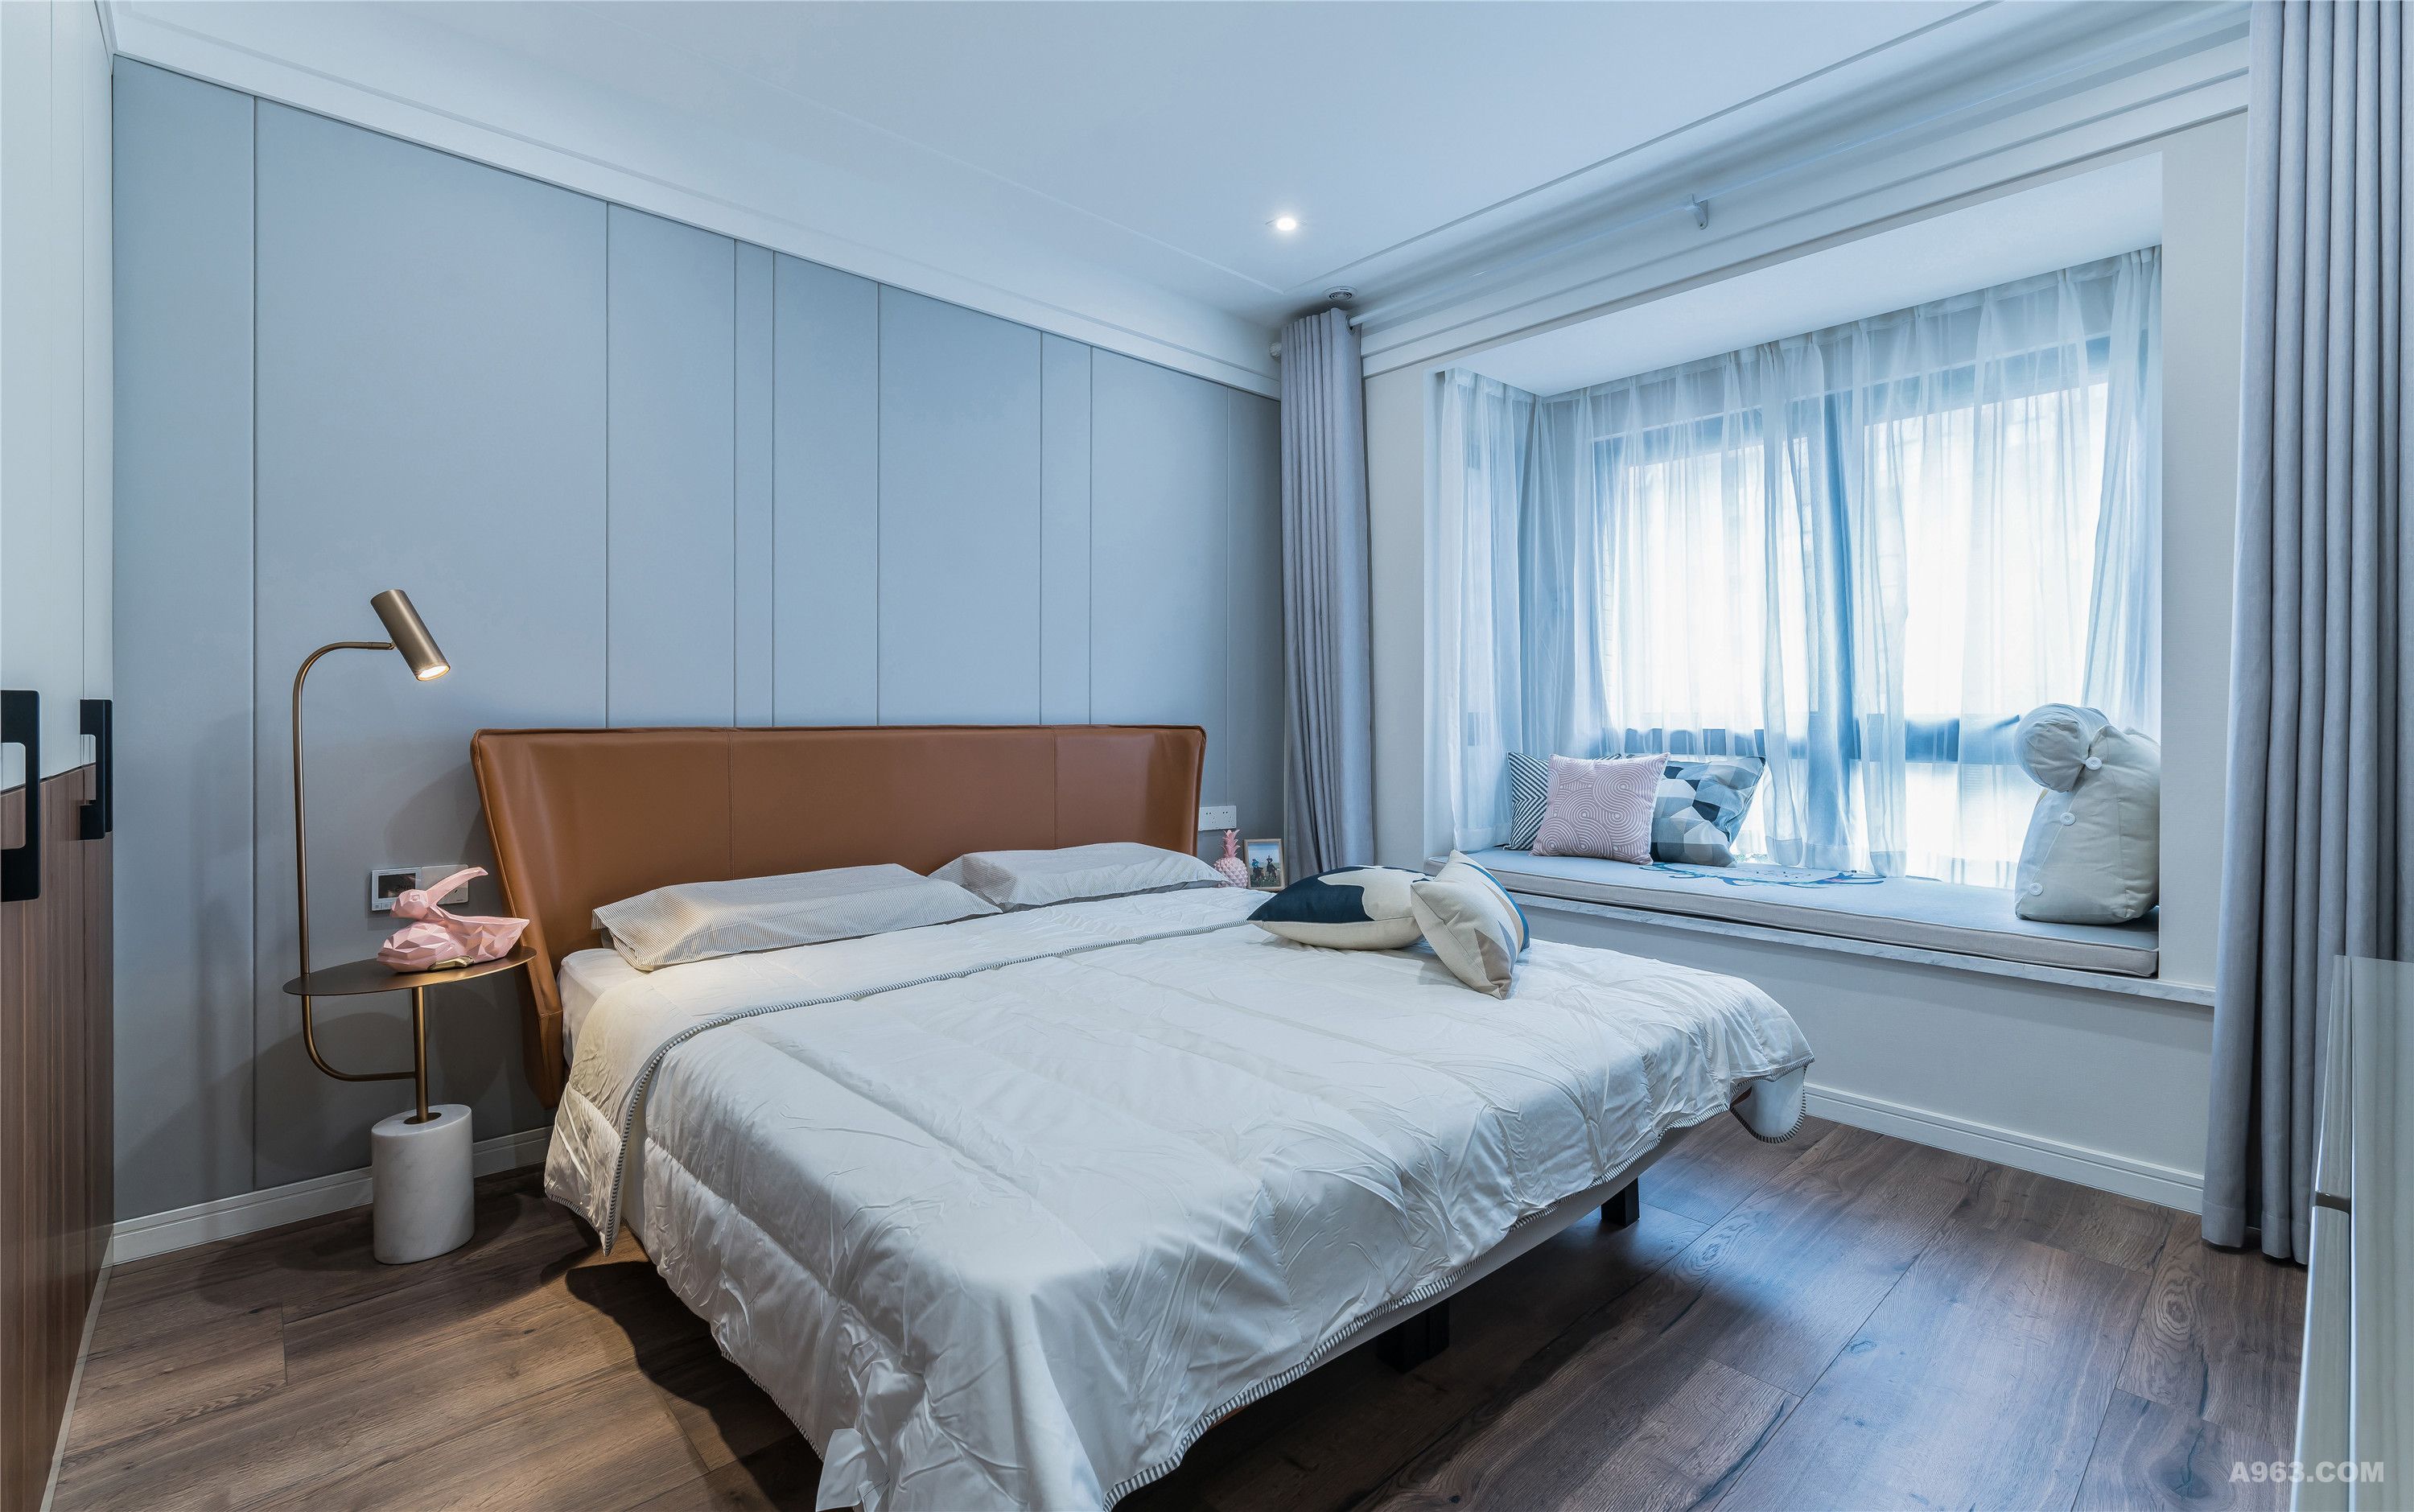 卧室使用安静的灰调与暖色的木制地板造成视觉上温润的效果，营造空间朴实悠闲的场域精神。简单却不单调的颜色搭配，过滤了原本饱和度的强烈和浓重，显得更加柔和优雅。